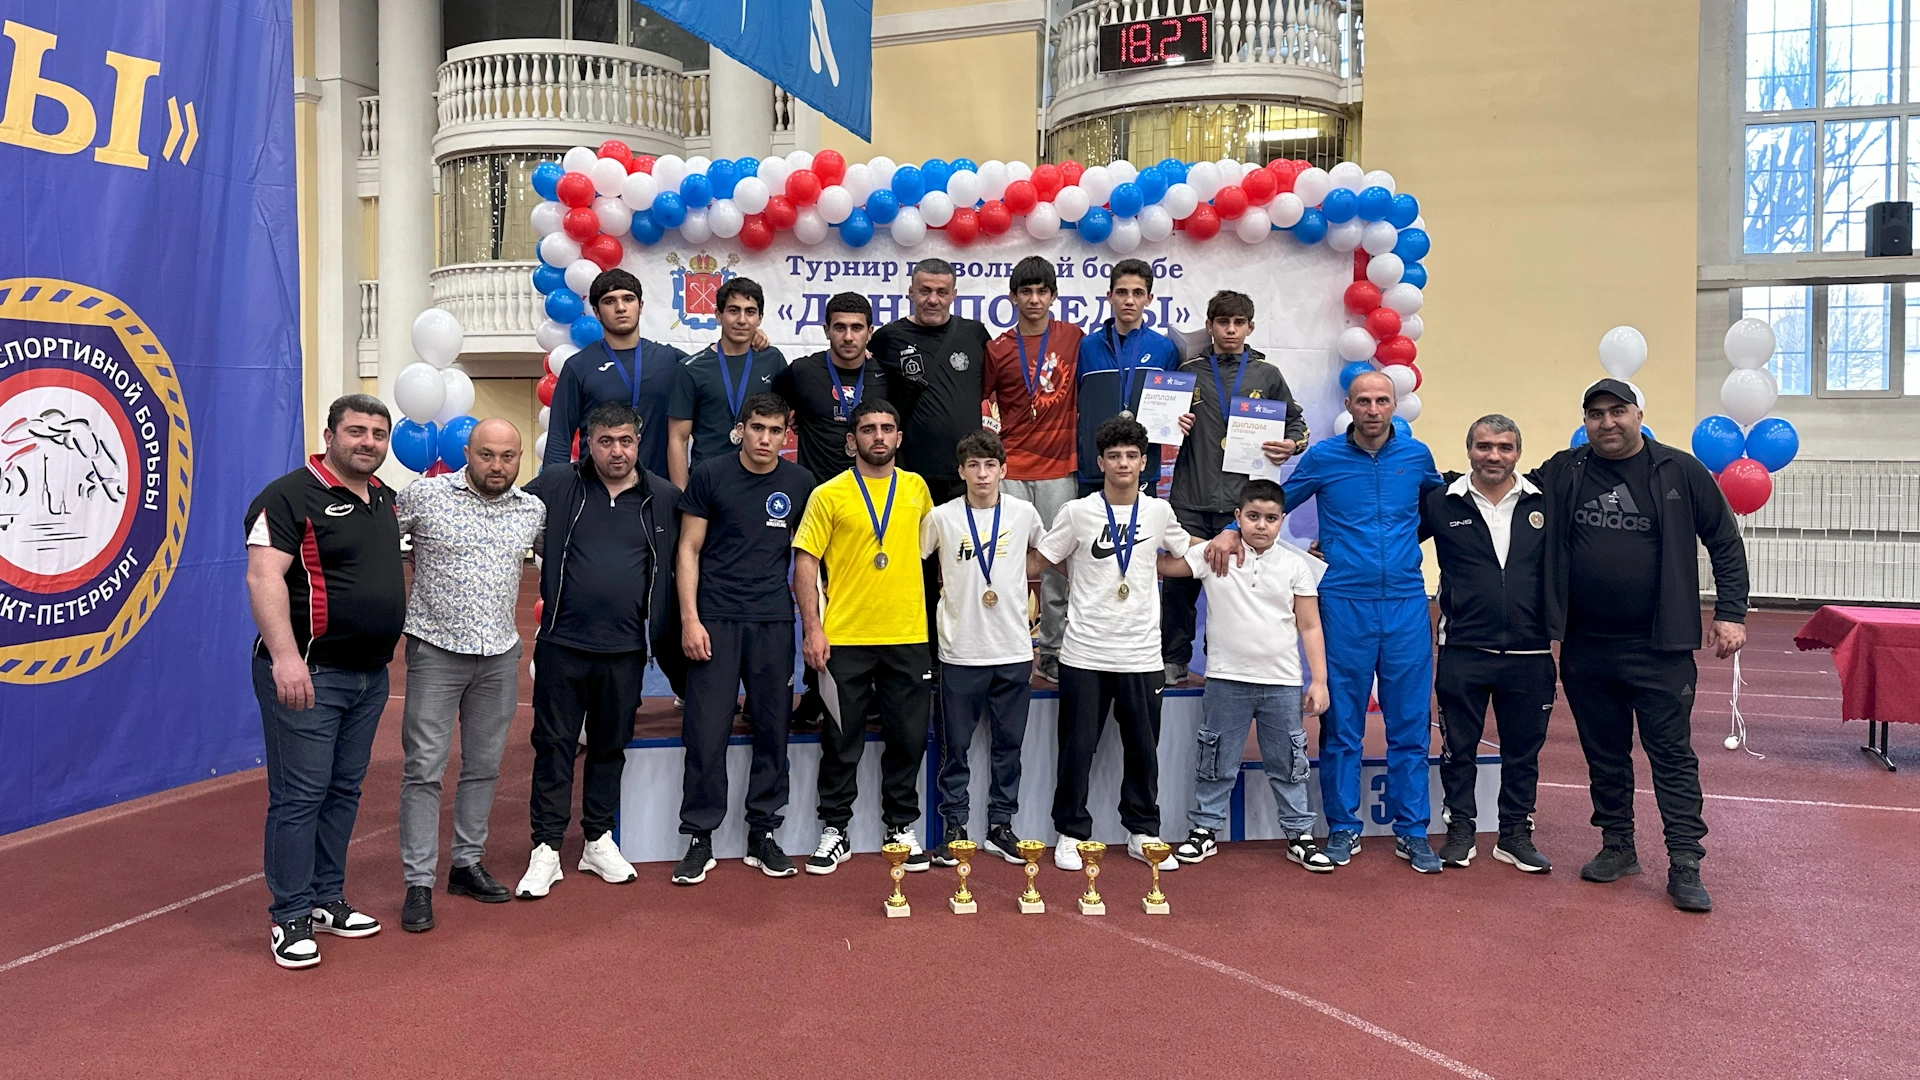 Армянские борцы завоевали 5 золотых медалей на турнире в Санкт-Петербурге